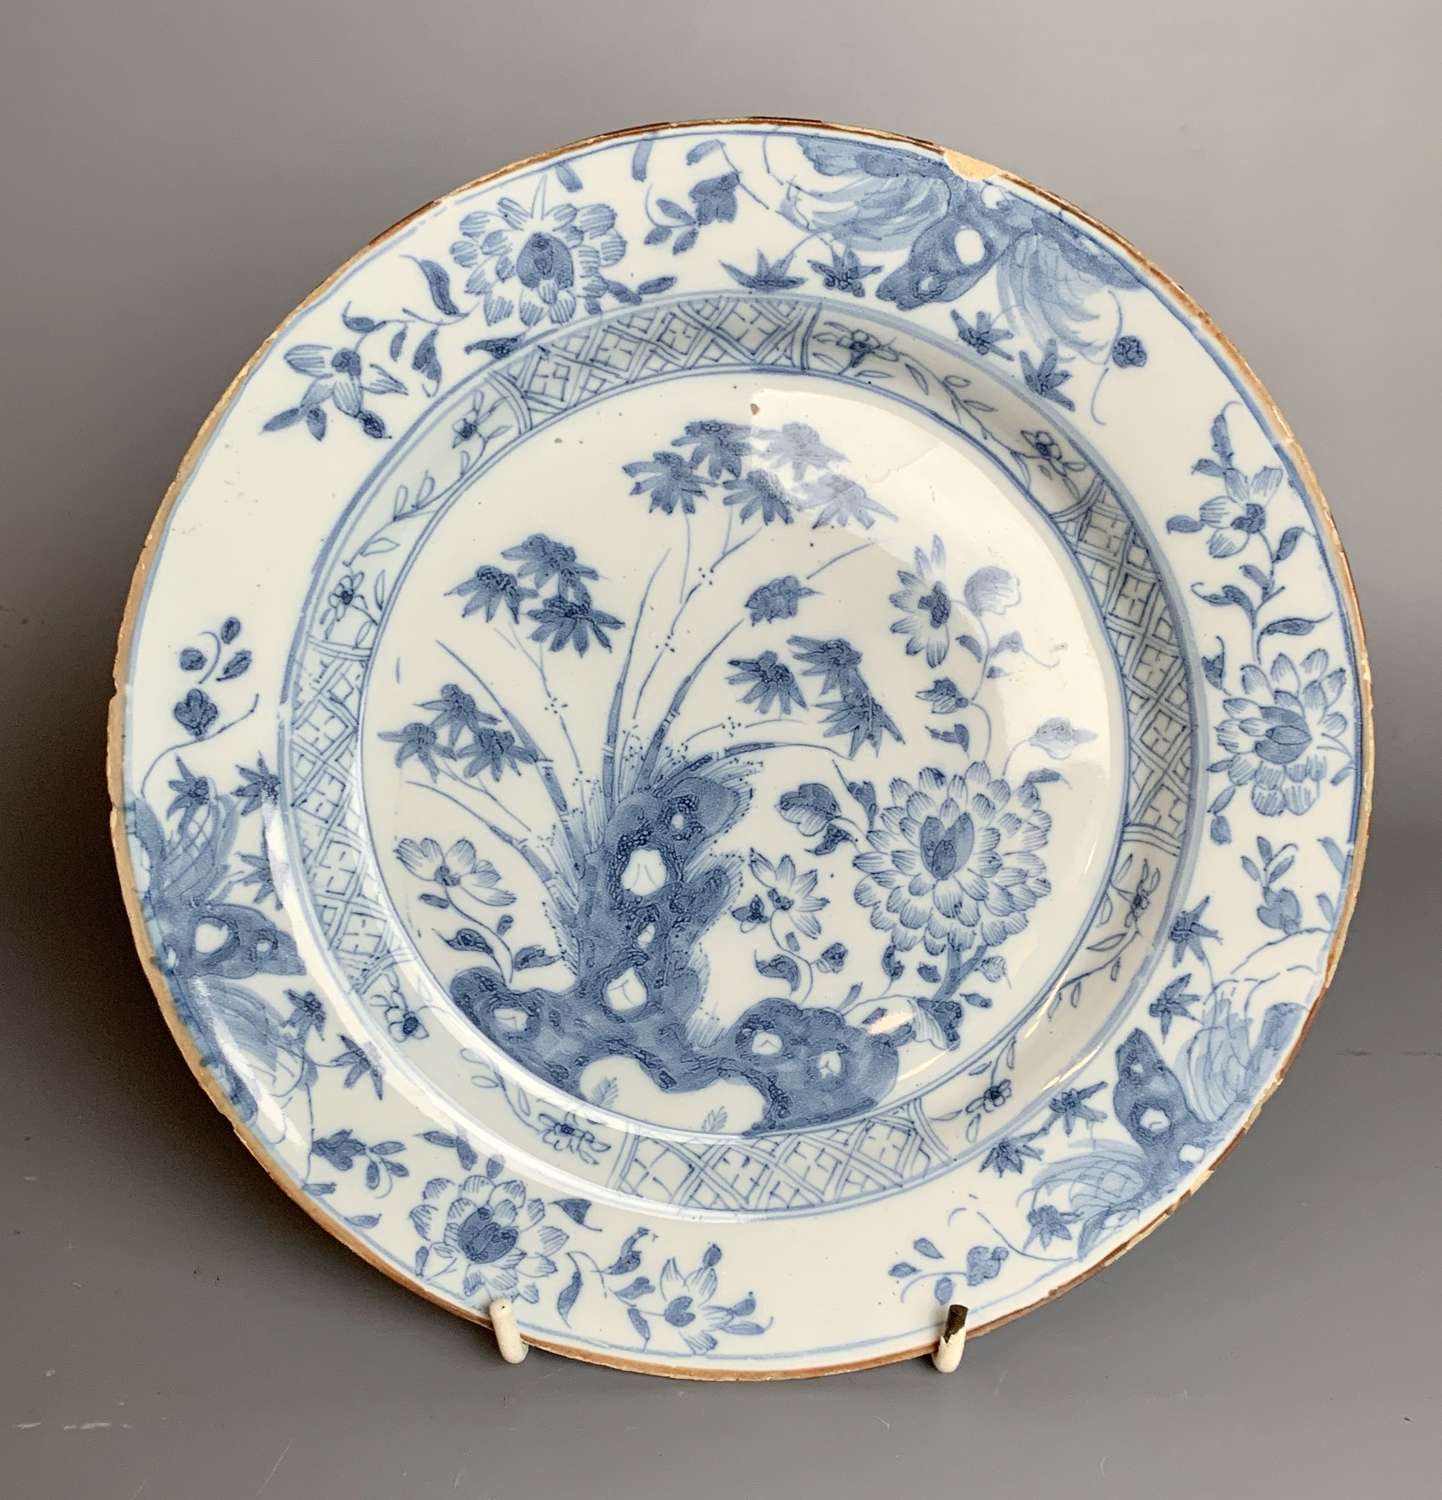 18th century Delft blue & white plate